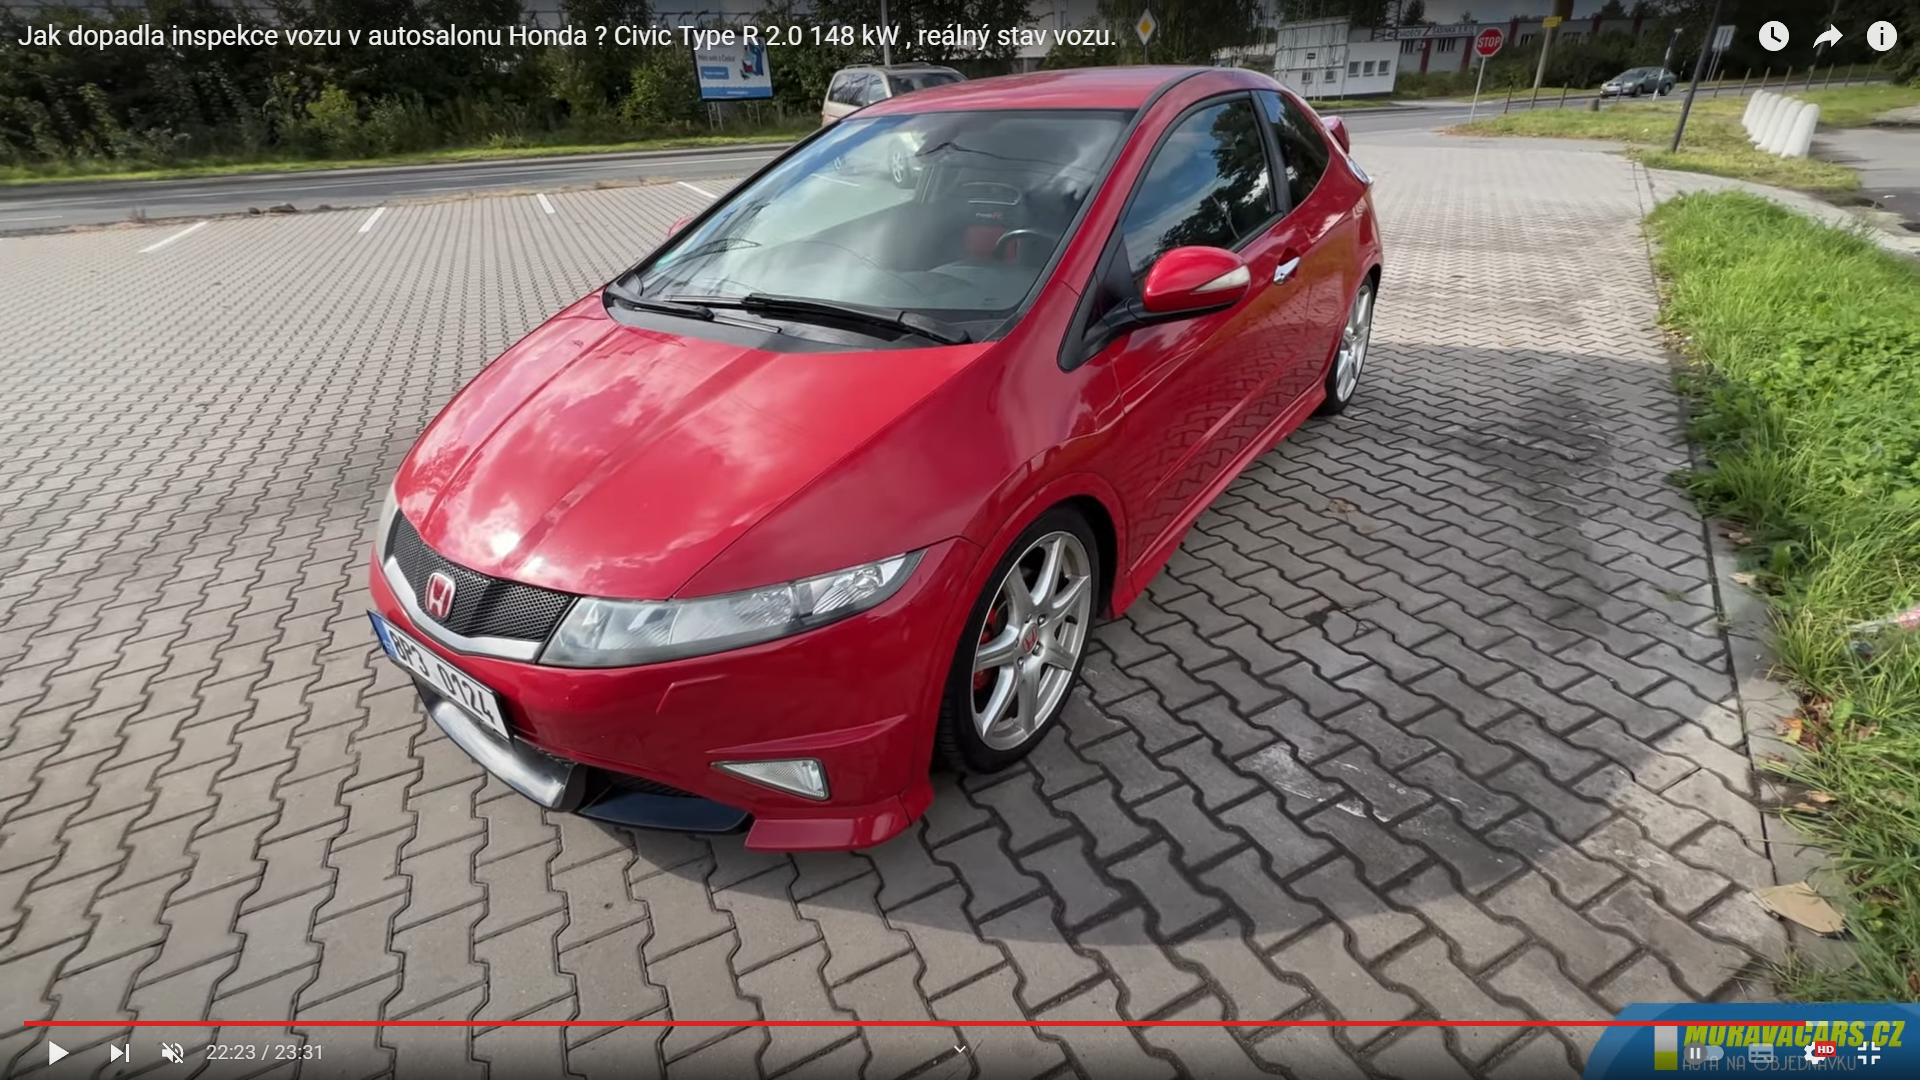 Jak dopadla inspekce vozu v autosalonu Honda ? Civic Type R 2.0 148 kW , reálný stav vozu.